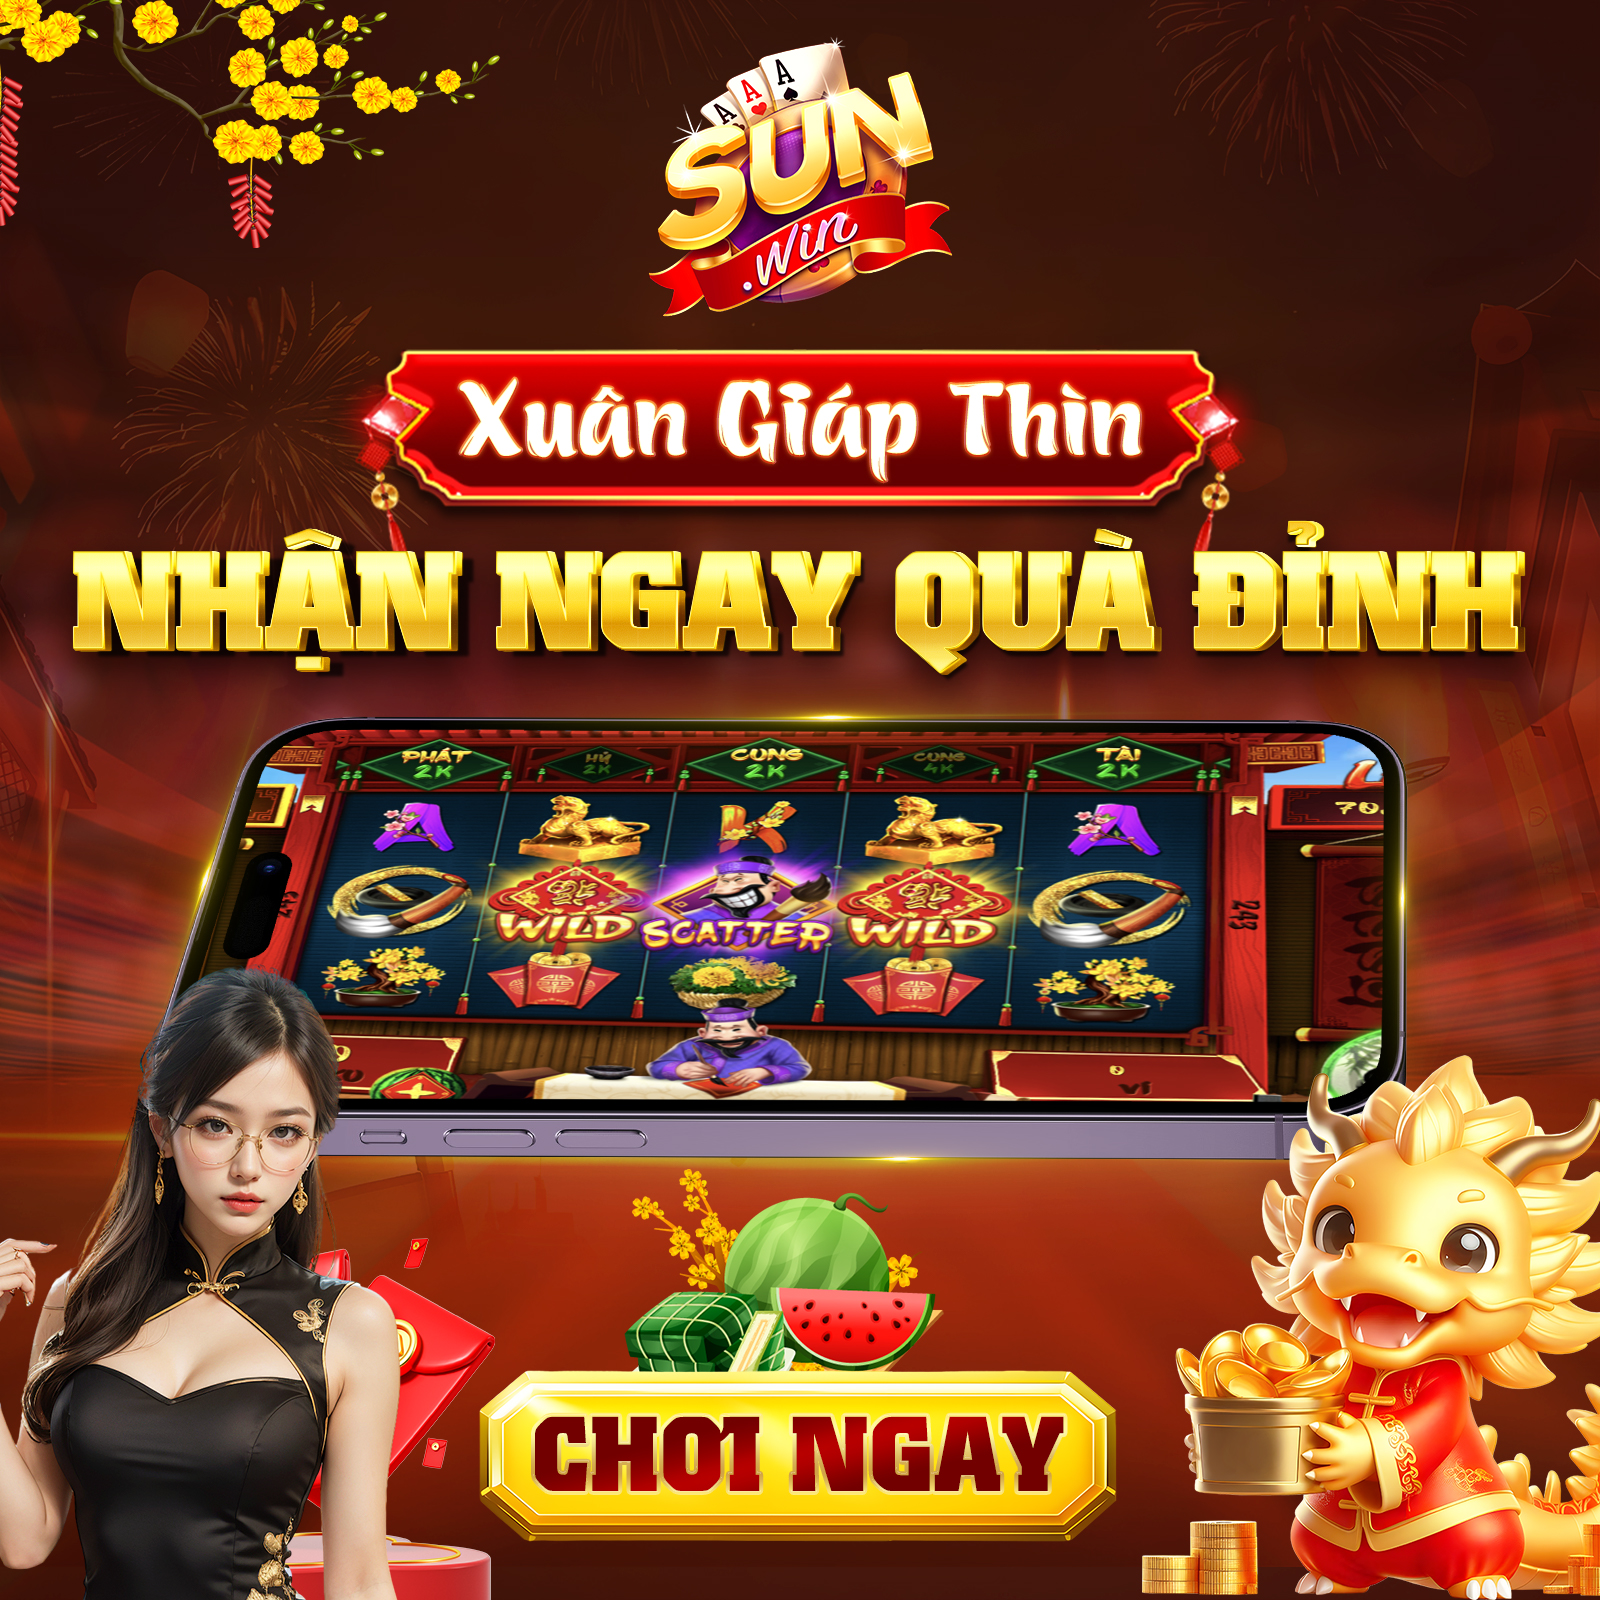 SUNWIN Xuan Giap Thin Slot ong do